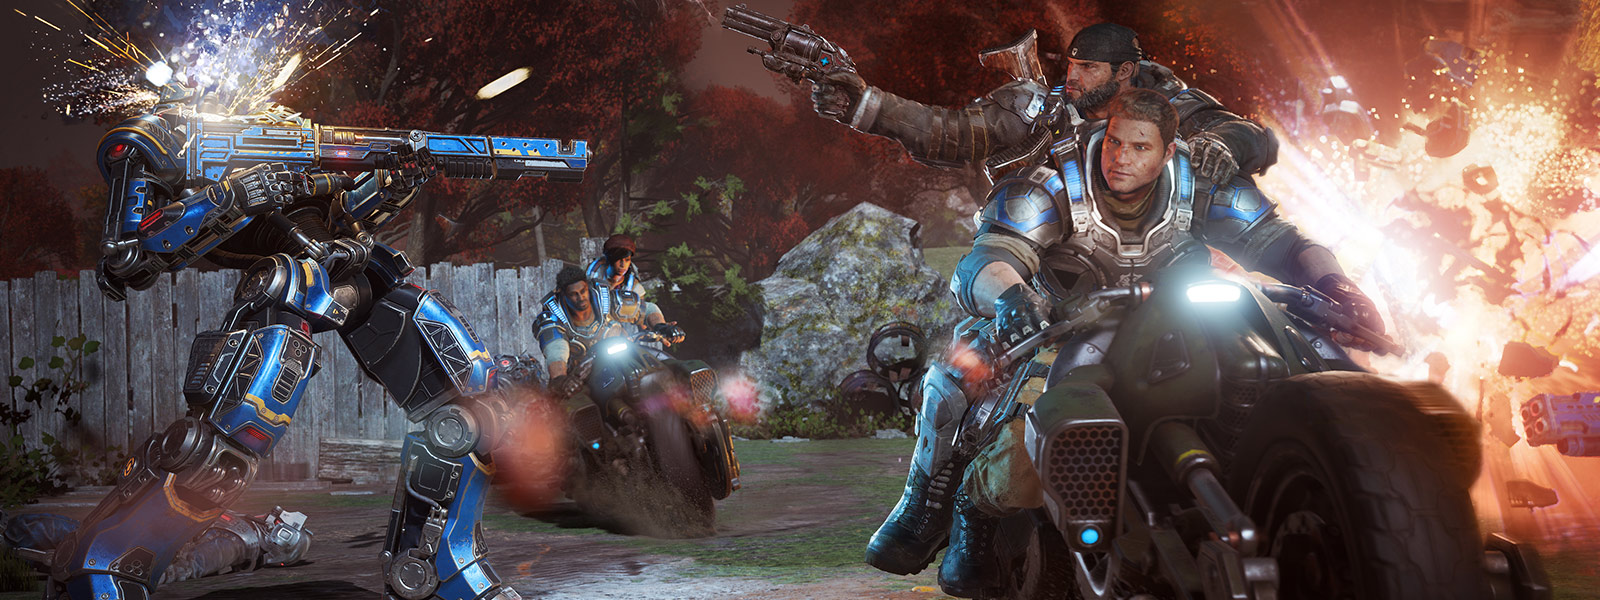 Bei einer Schlacht aus dem Spiel Gears of War 4 schießen JD Fenix und seine Freunde und fahren Motorrad